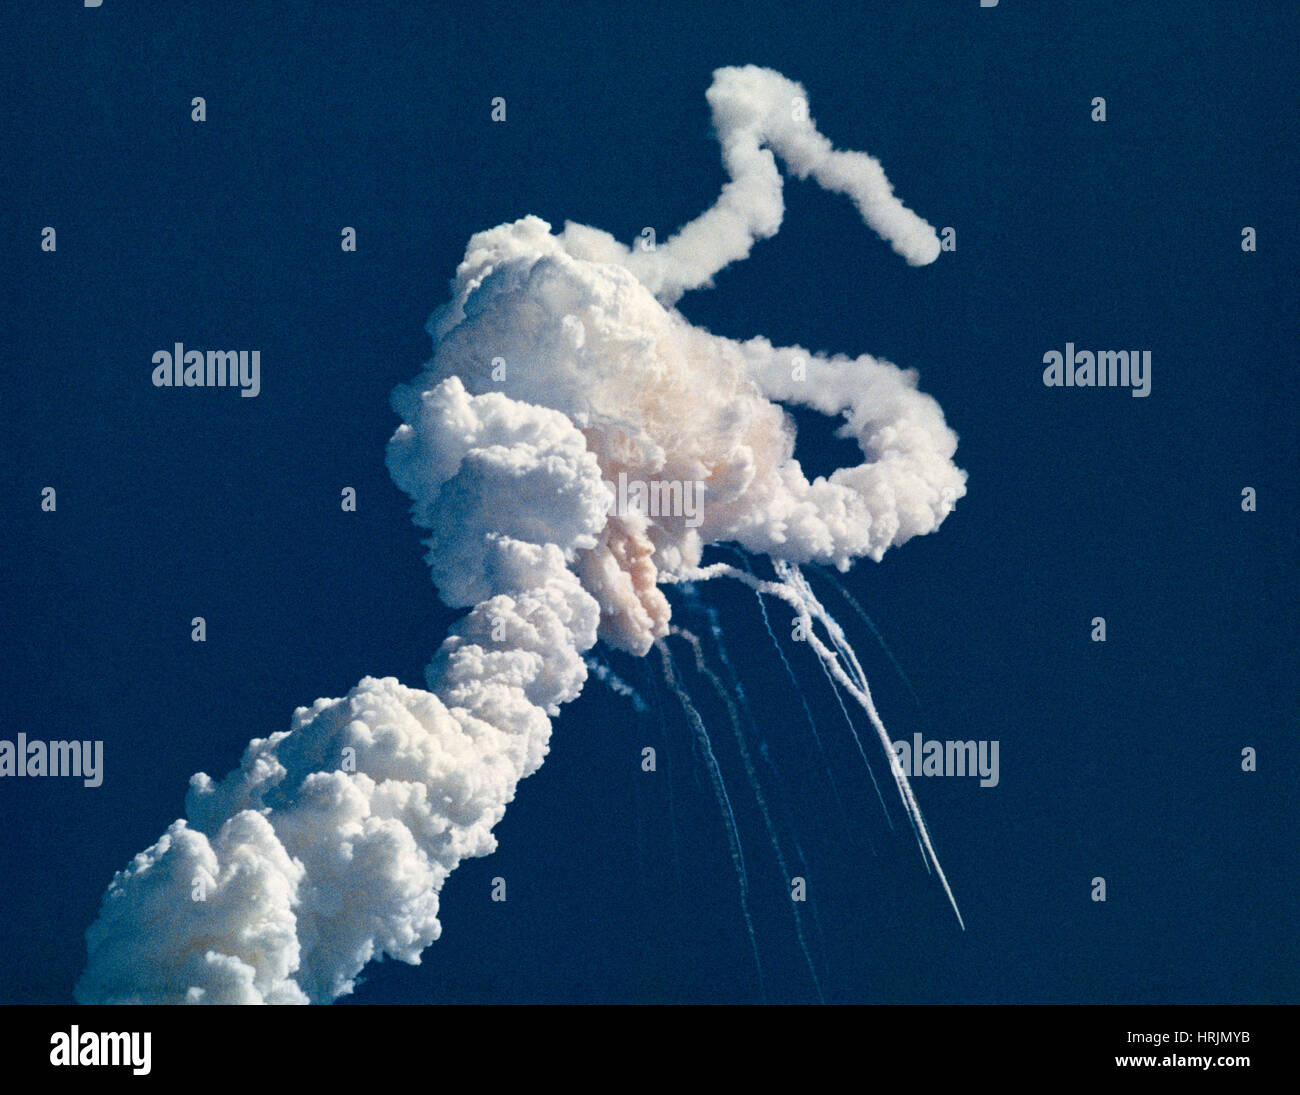 La catastrophe de la navette spatiale Challenger, 1986 Banque D'Images